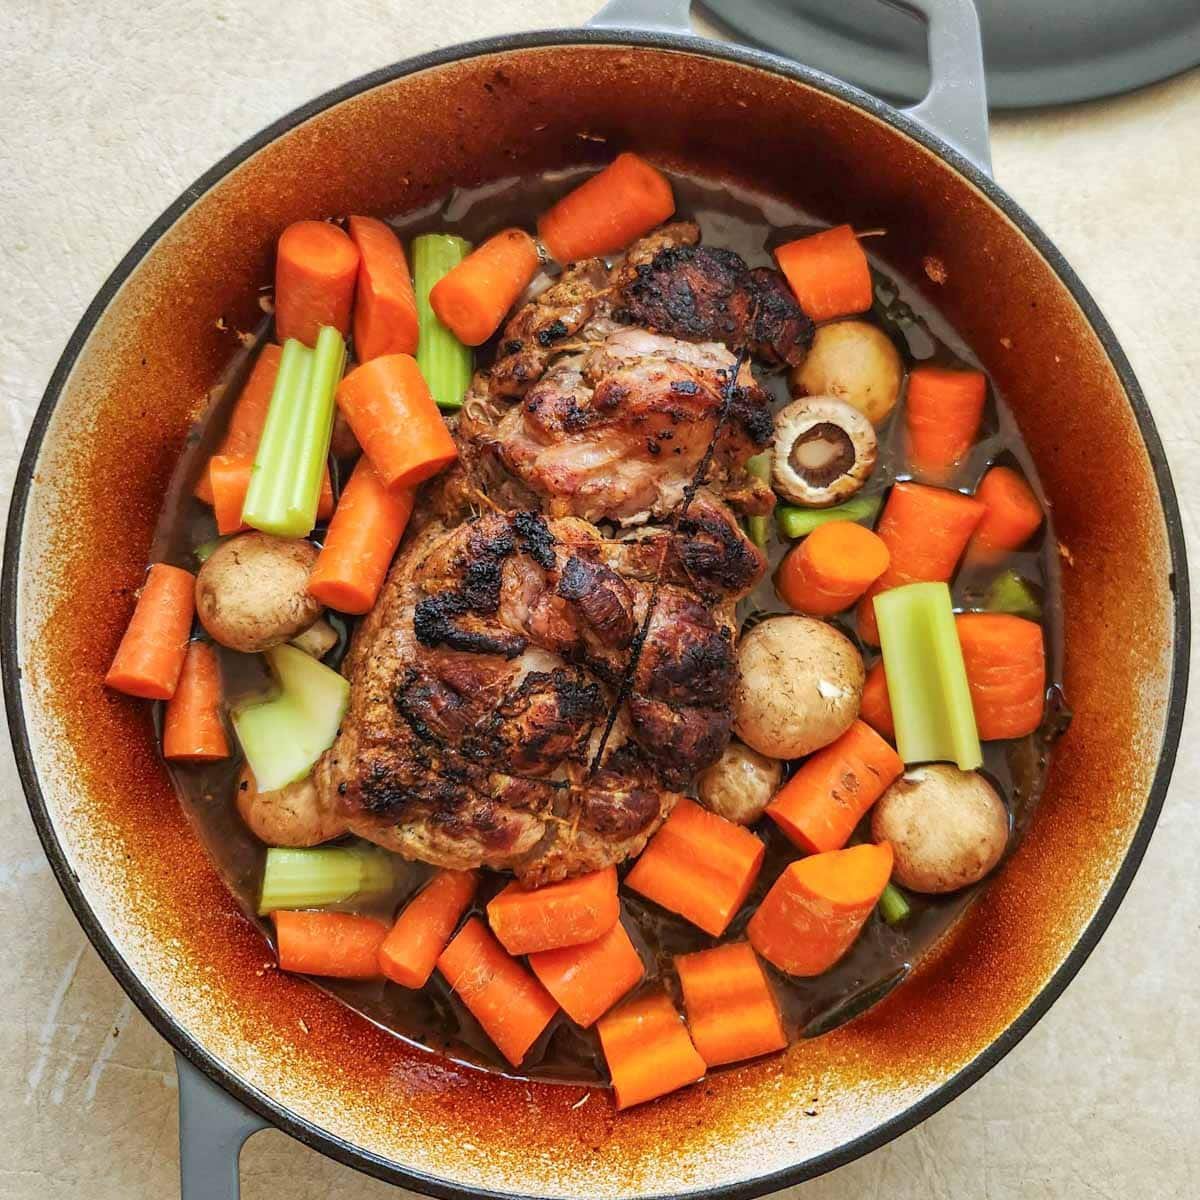 Roasted pork shoulder with veggies